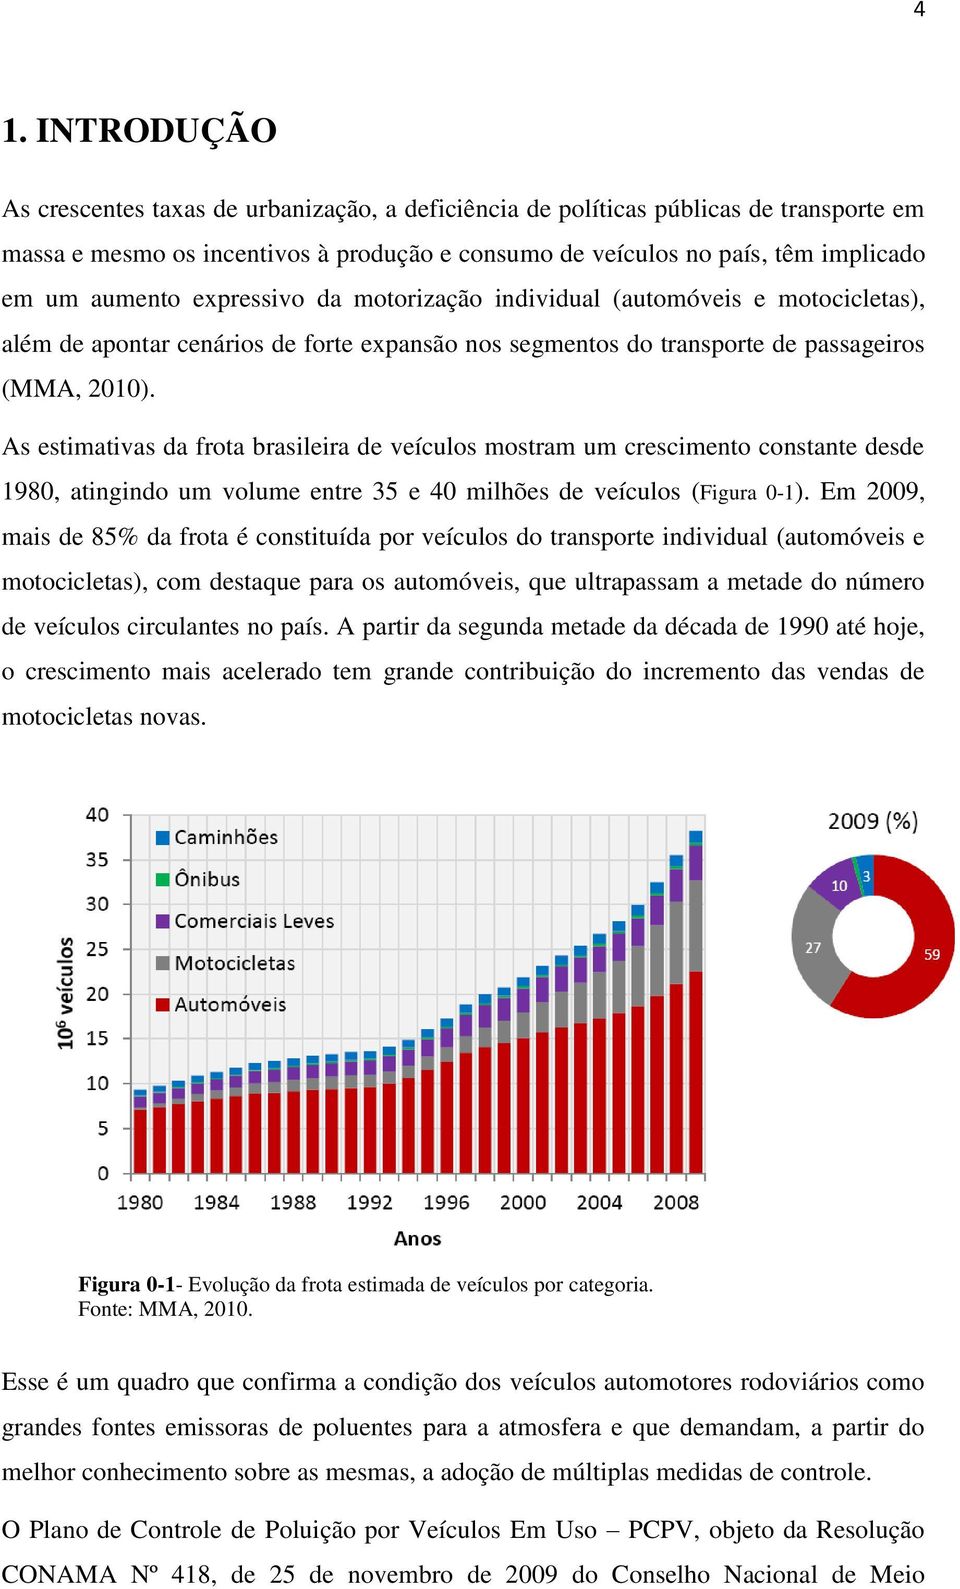 As estimativas da frota brasileira de veículos mostram um crescimento constante desde 1980, atingindo um volume entre 35 e 40 milhões de veículos (Figura 0-1).